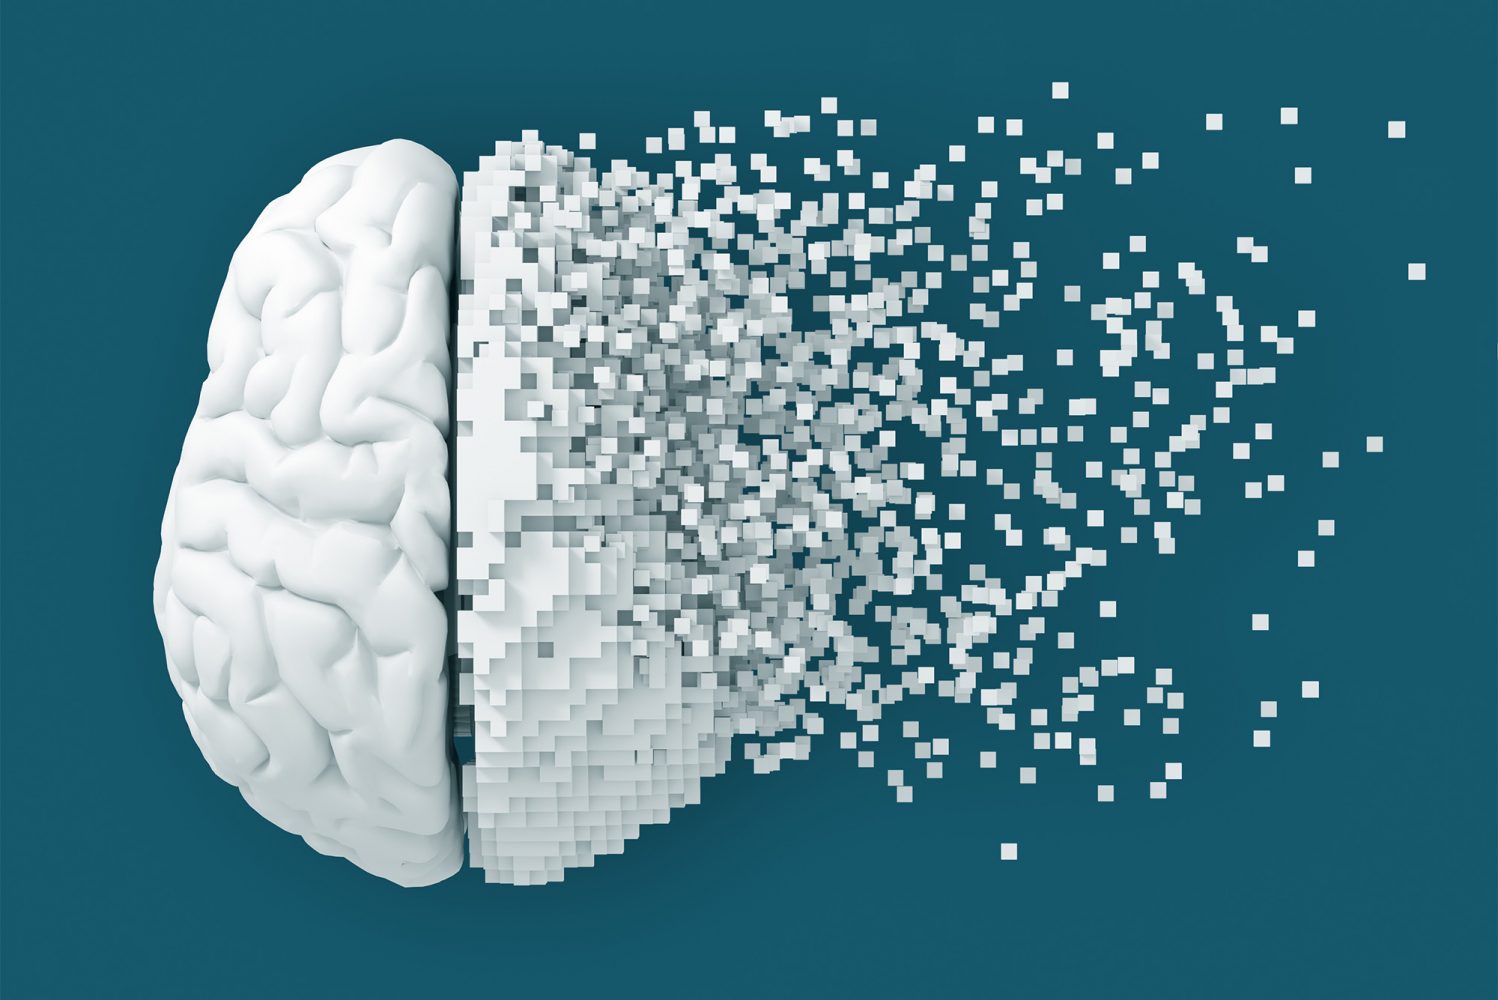 Inteligencia artificial detecta el deterioro cognitivo de forma precisa y eficiente a partir de grabaciones de voz